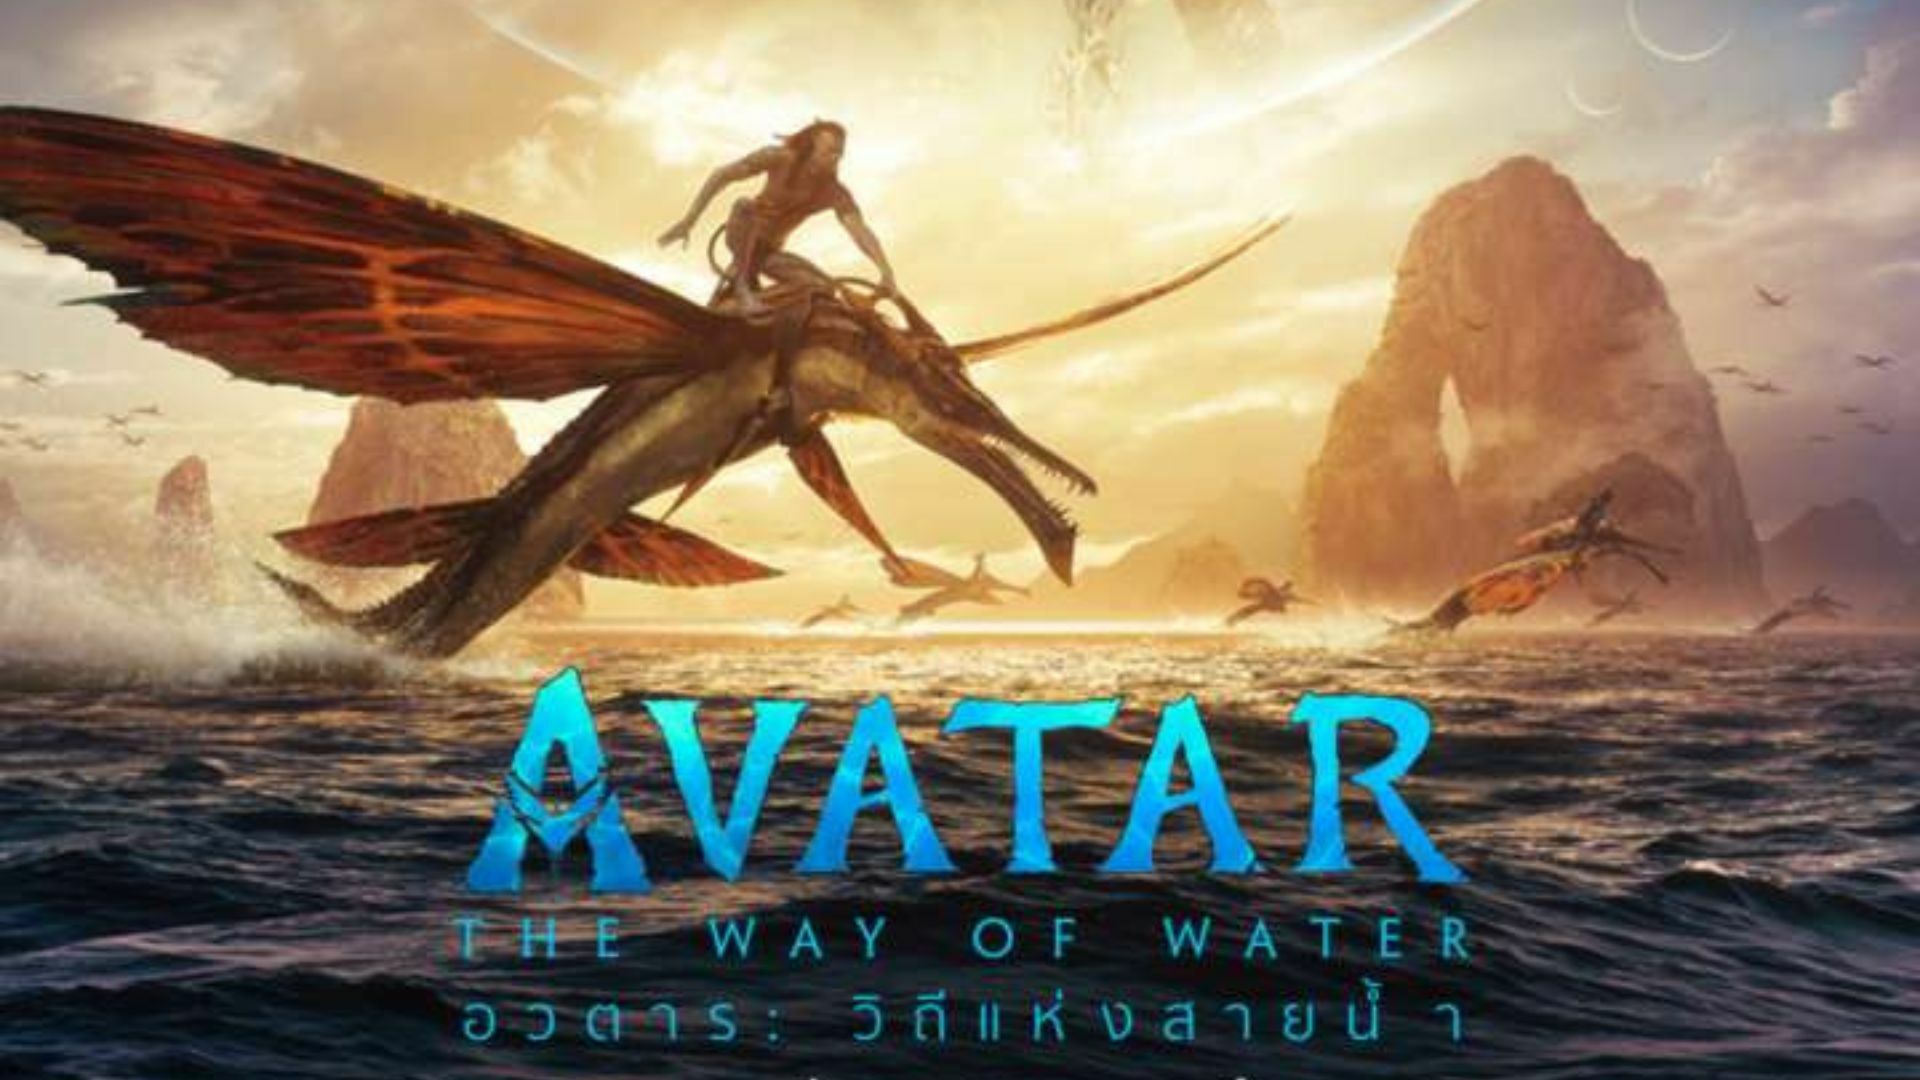 Avatar 2 (อวตาร 2 วิถีแห่งสายน้ำ) 2022 พากย์ไทย ซูม